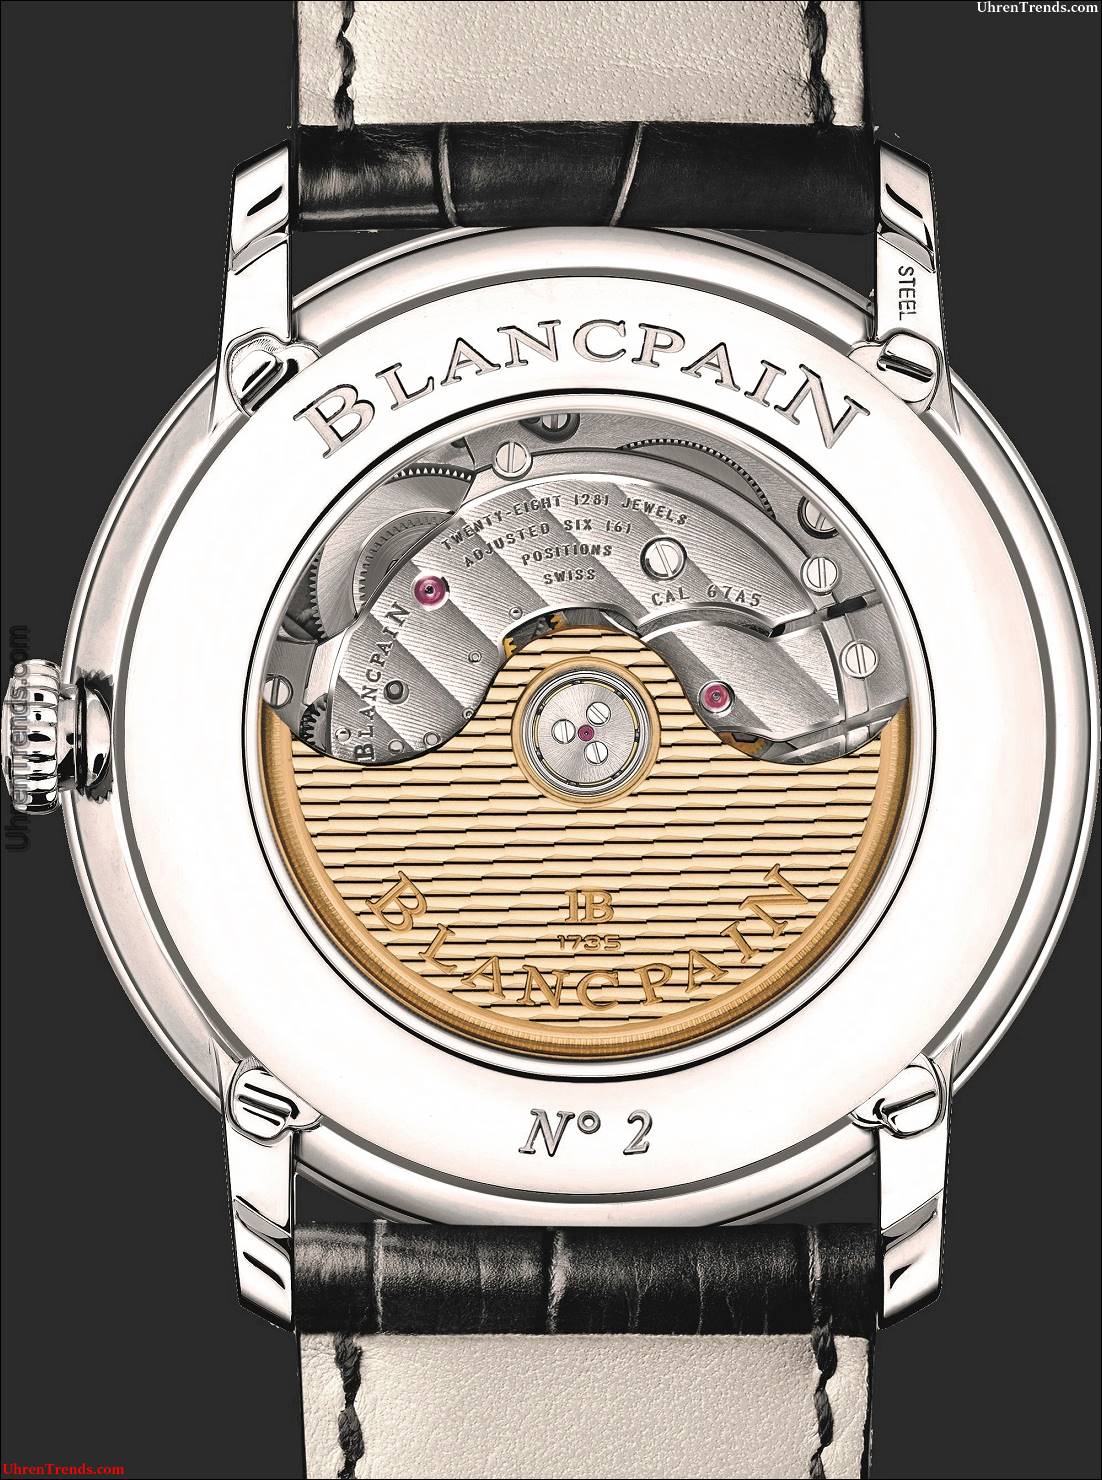 Blancpain Villeret Quantième Complet GMT Uhr  